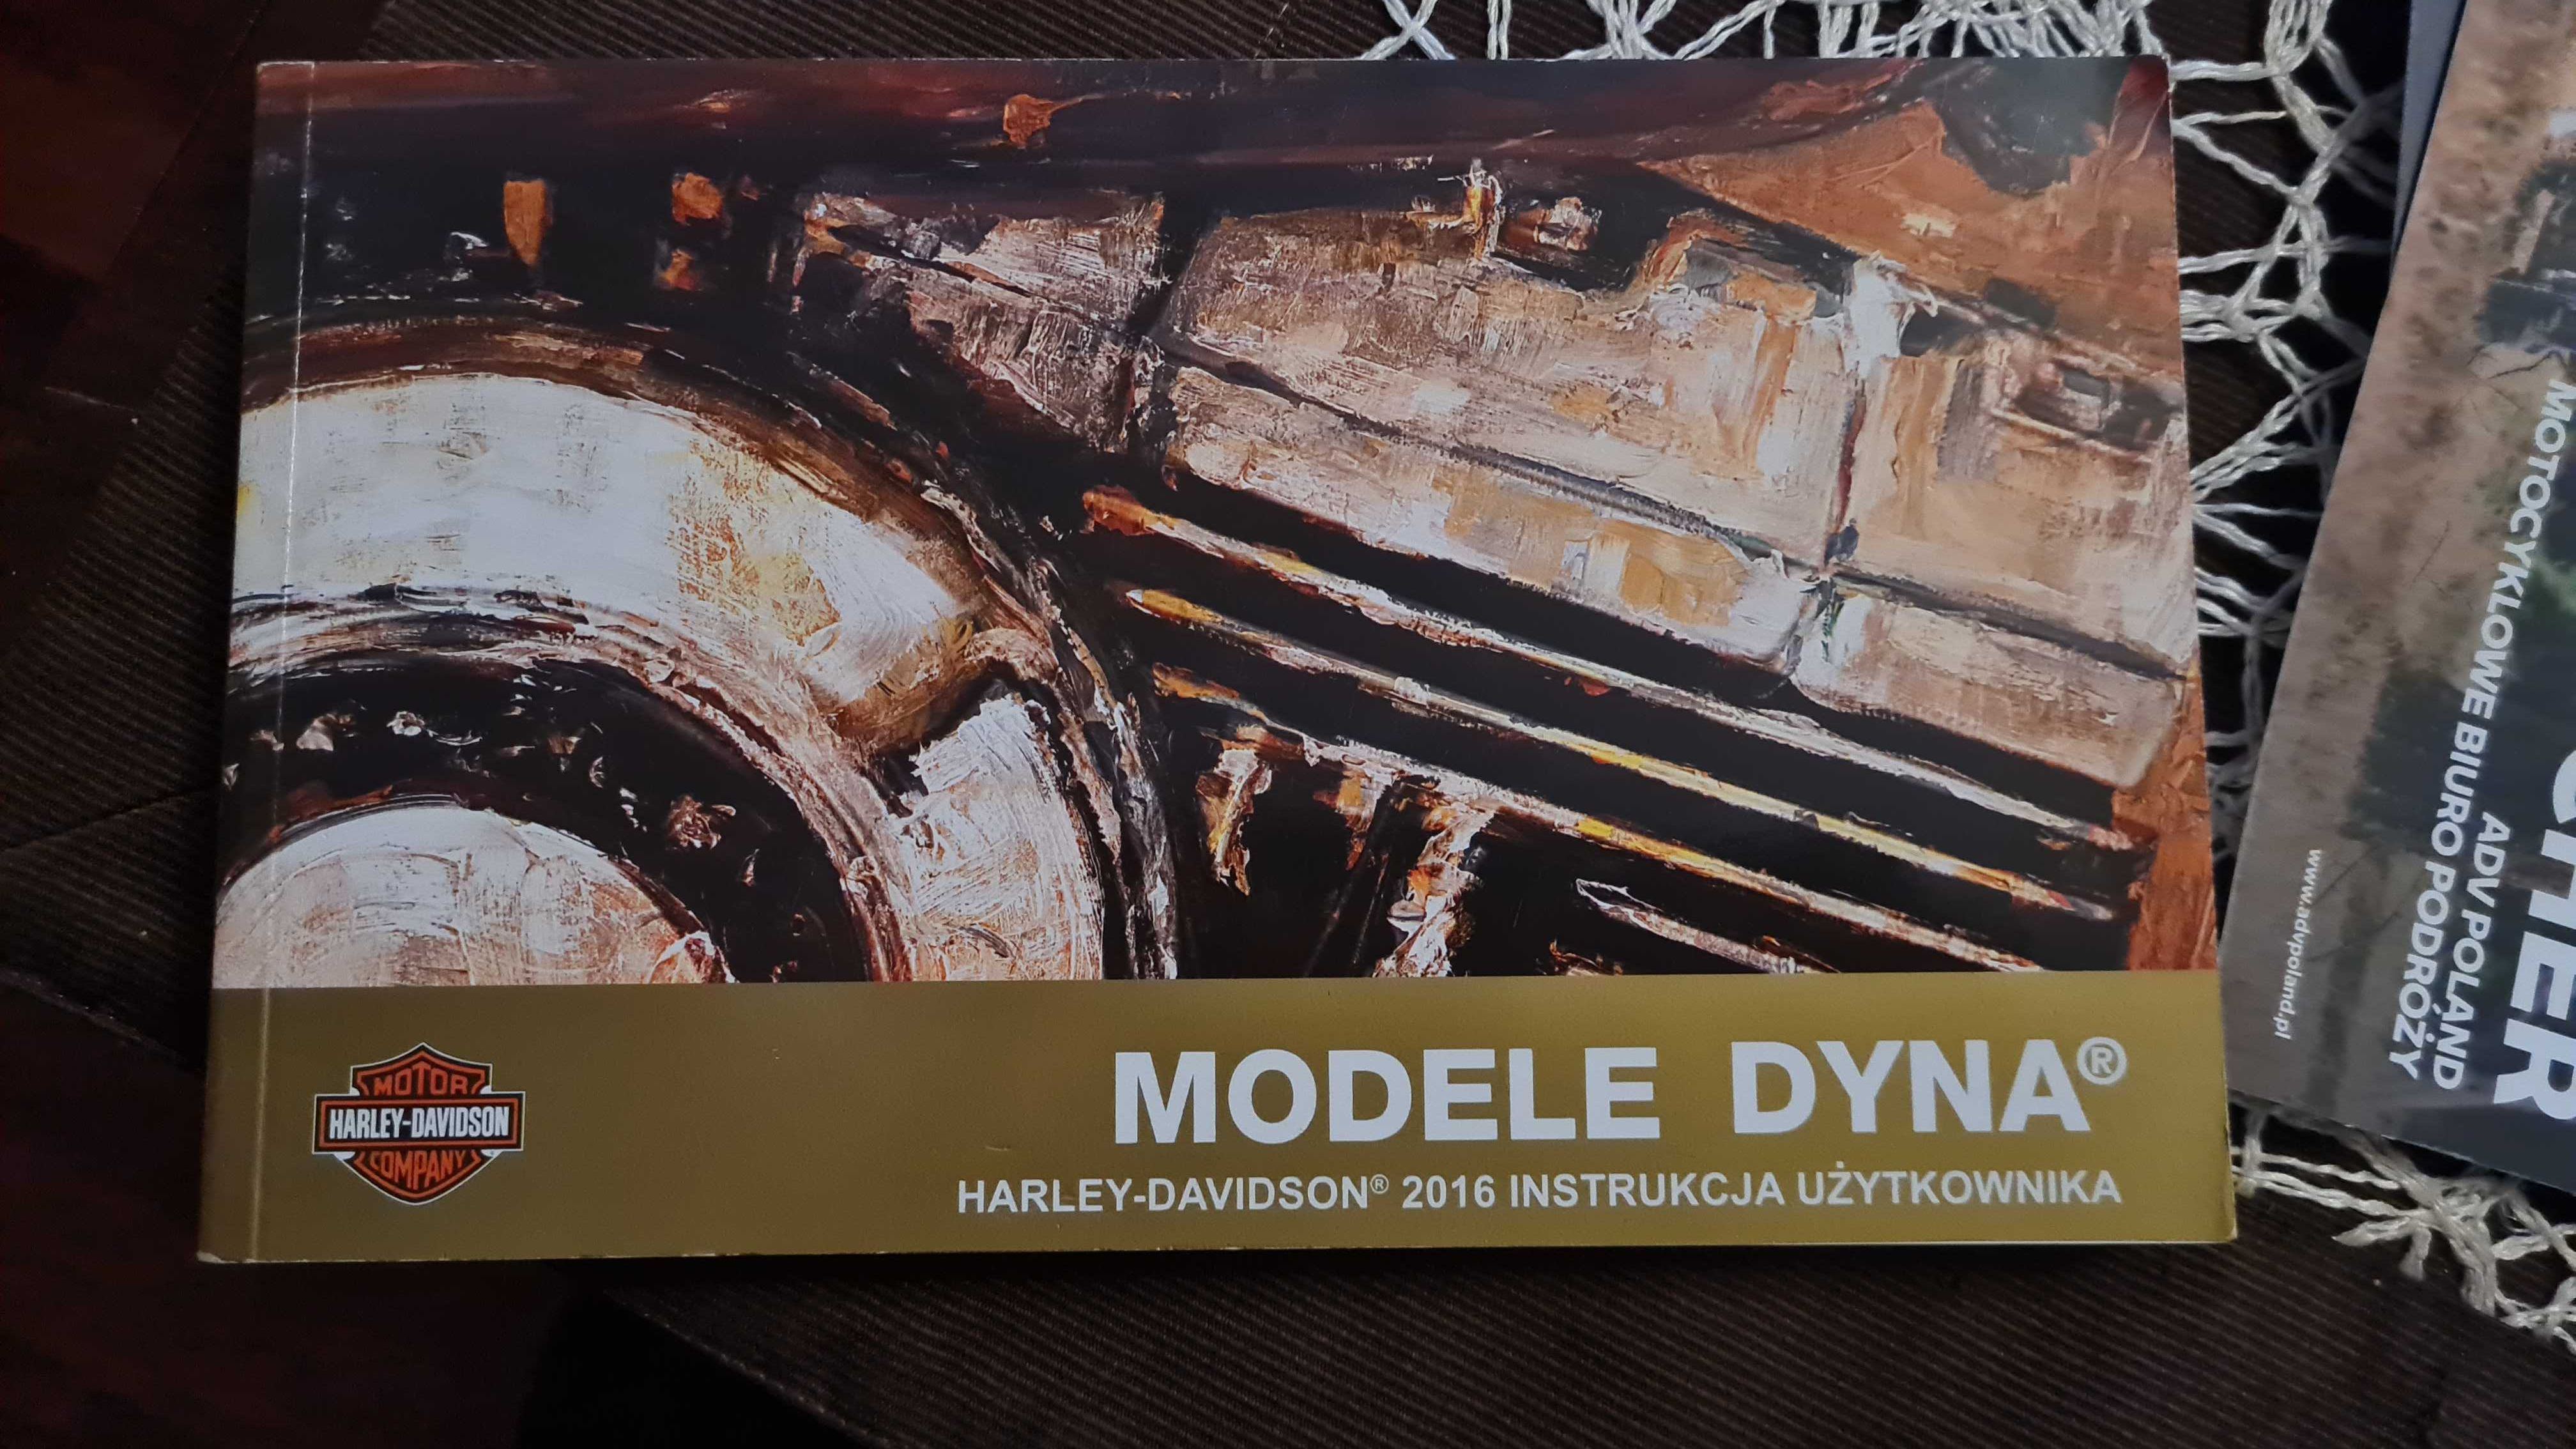 Harley Davidson instrukacja użytkownika Modele Dyna 2016